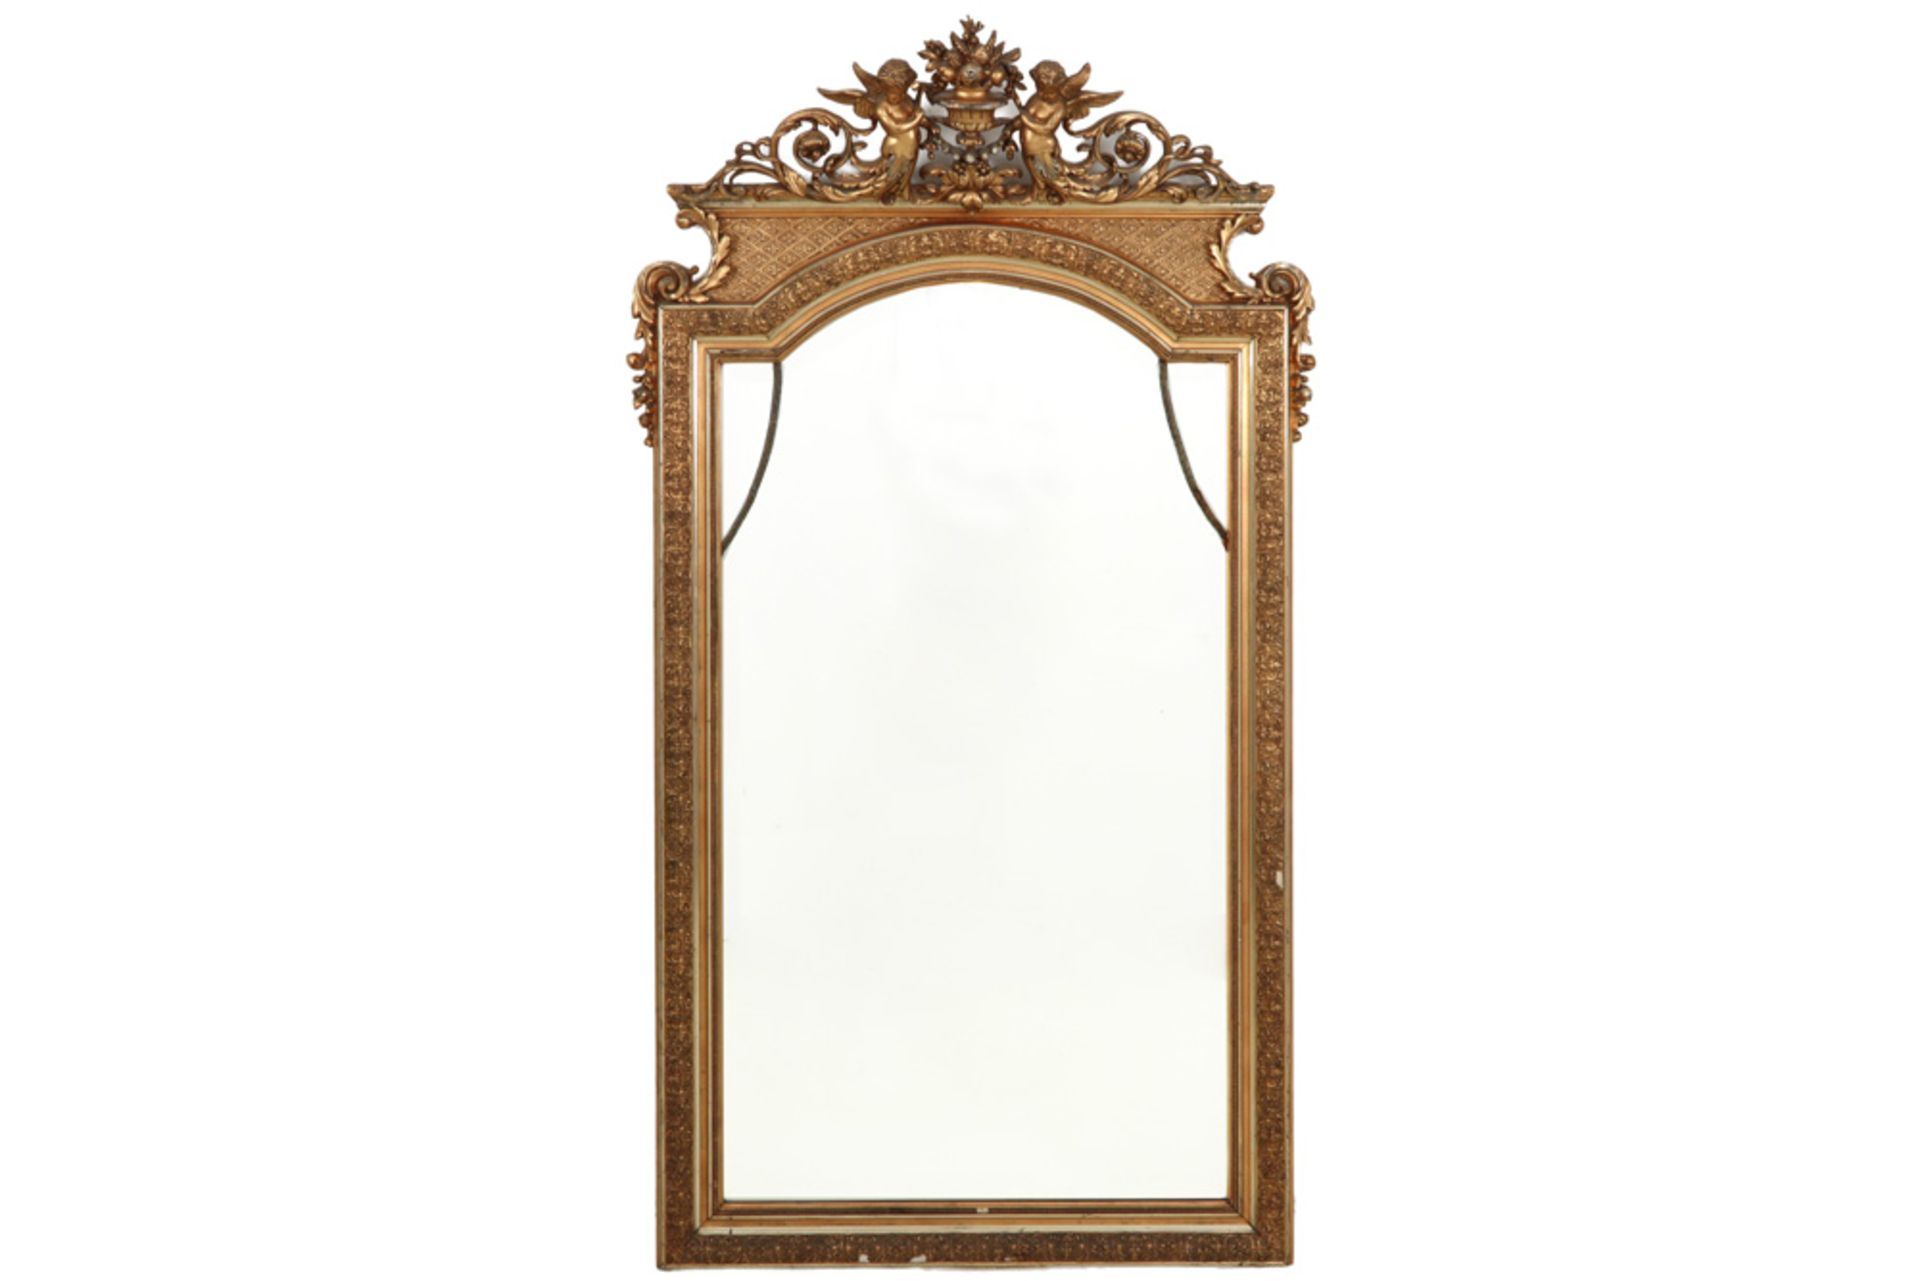 mirror with an antique baroque style gilded frame with cupids || Gebisotteerde spiegel met een